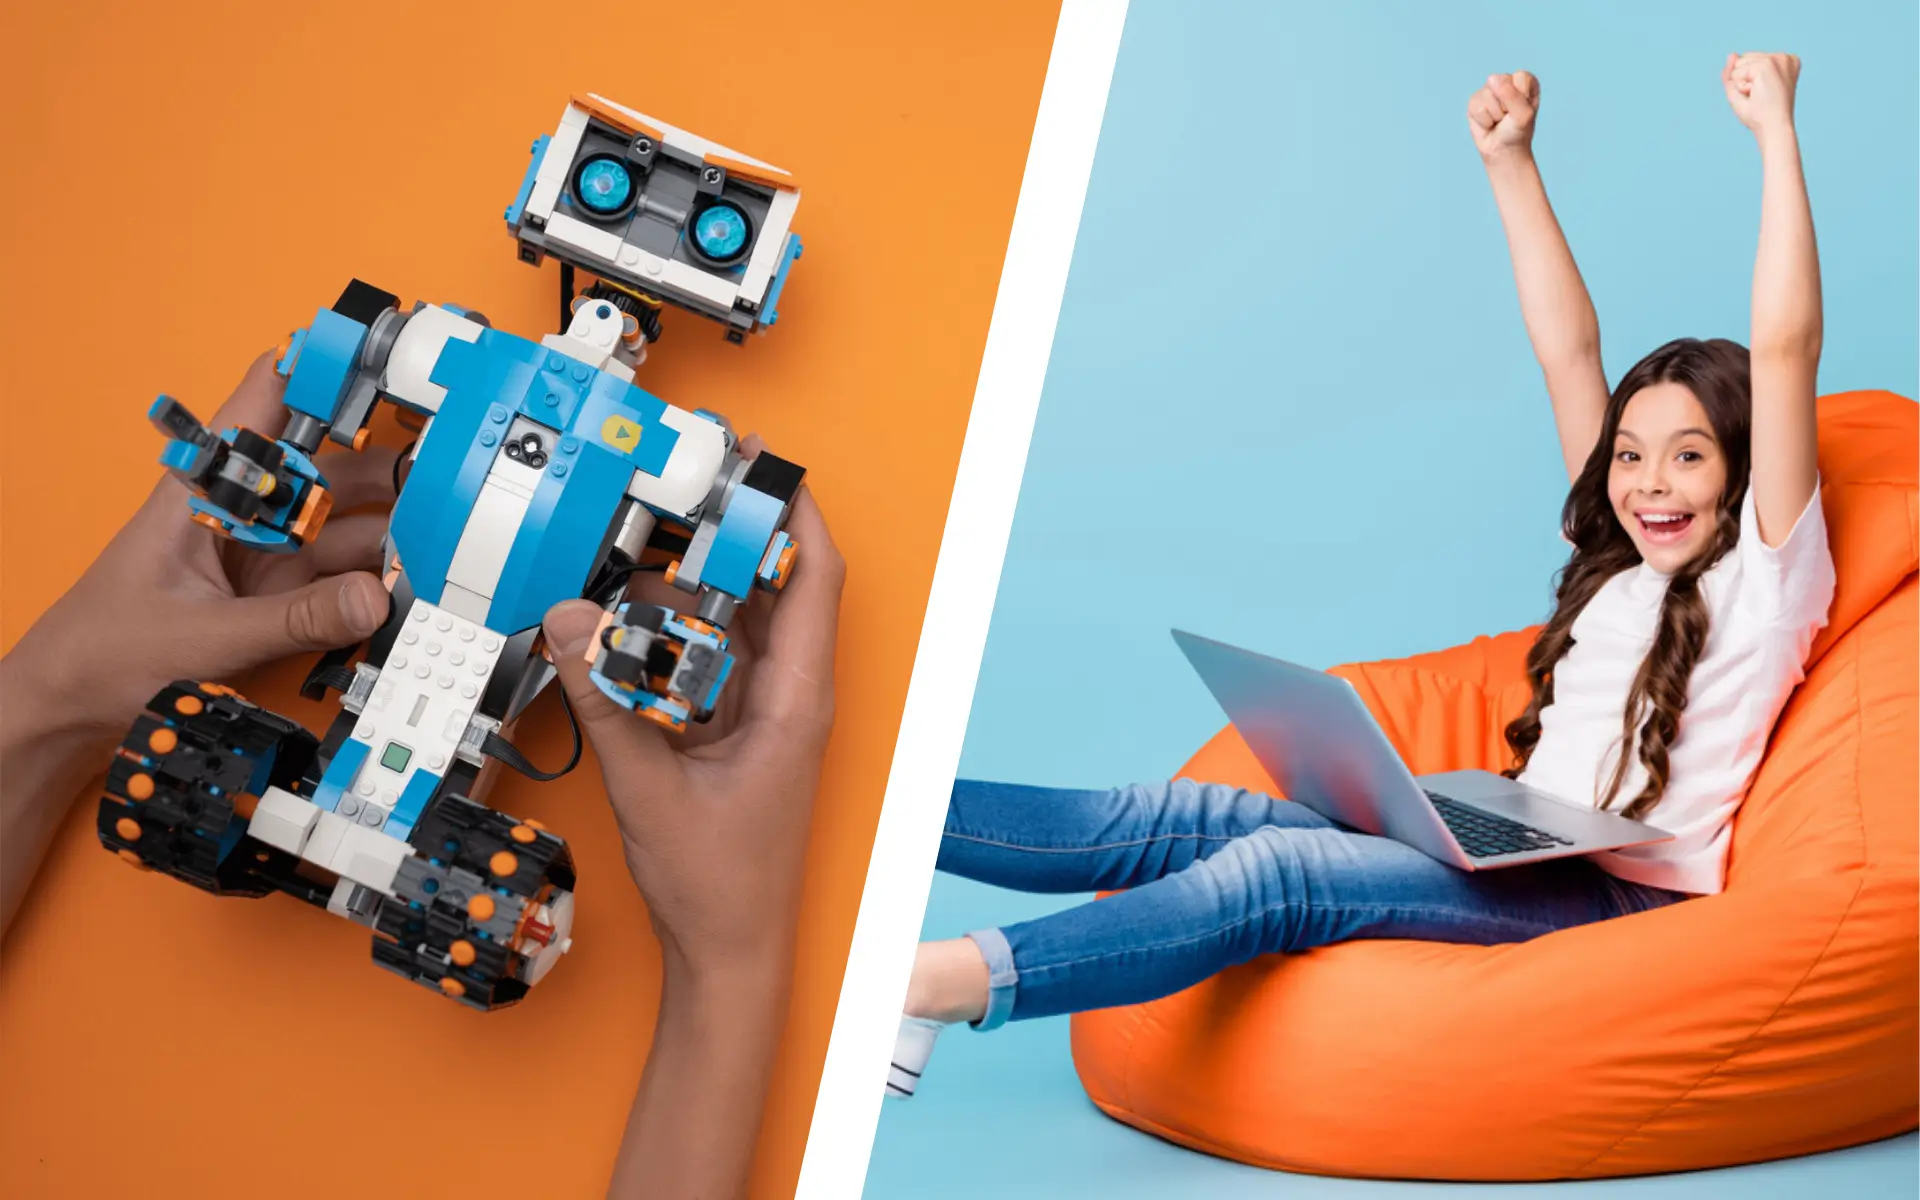 Play-i : un robot pour apprendre la programmation aux enfants